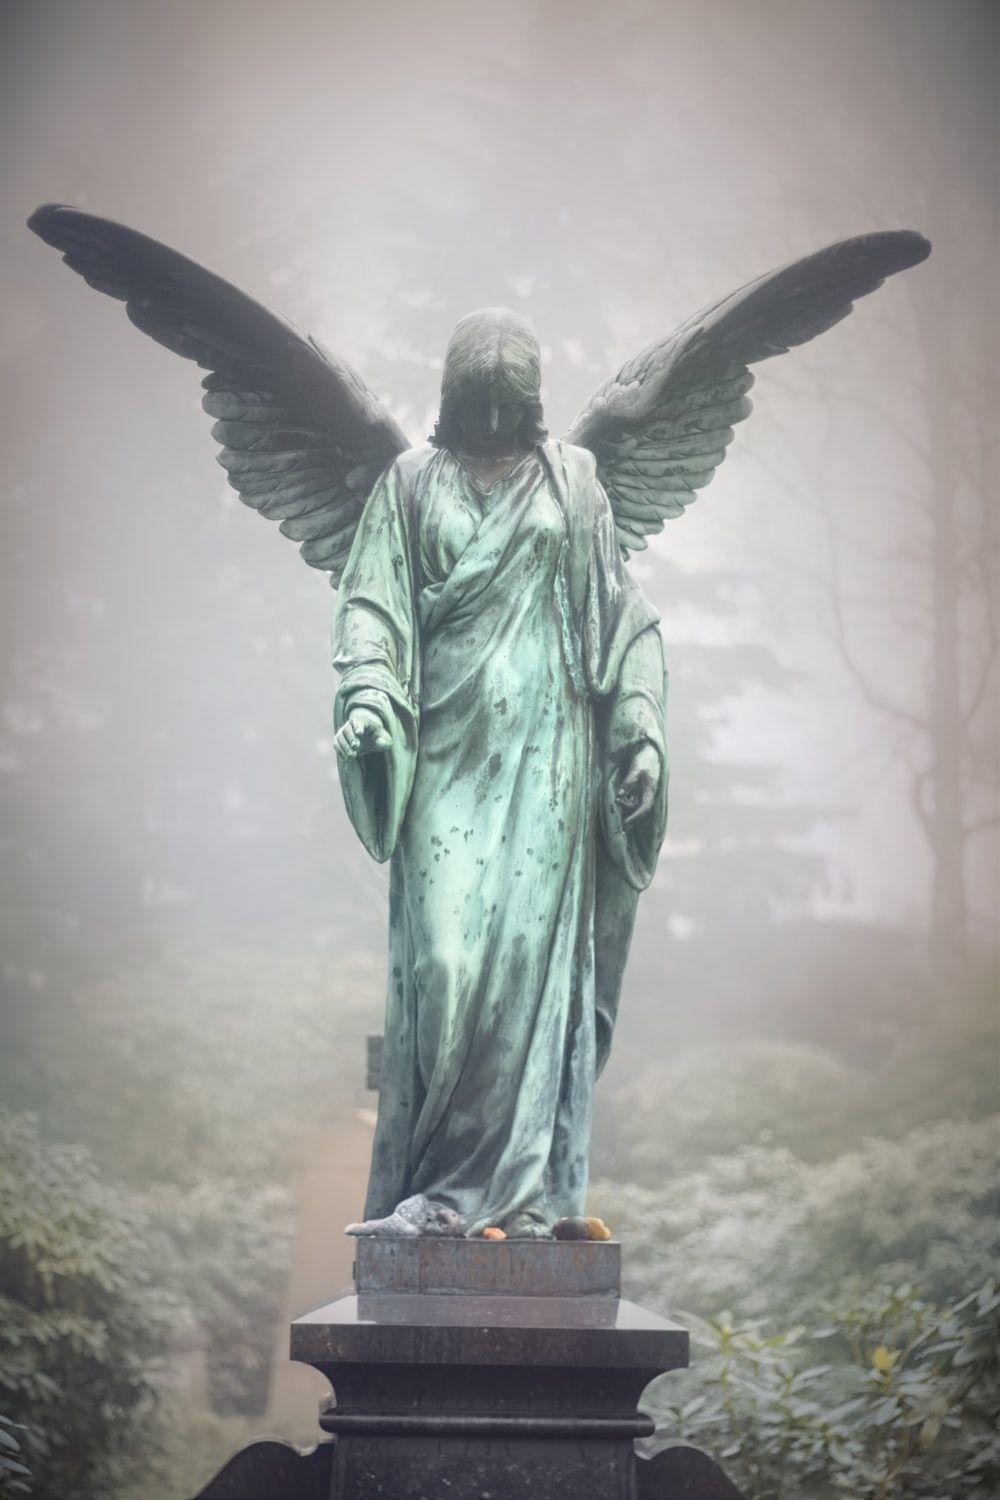 تصویر واقعی مجسمه فرشته بالدار بدون ادیت و فتوشاپ 